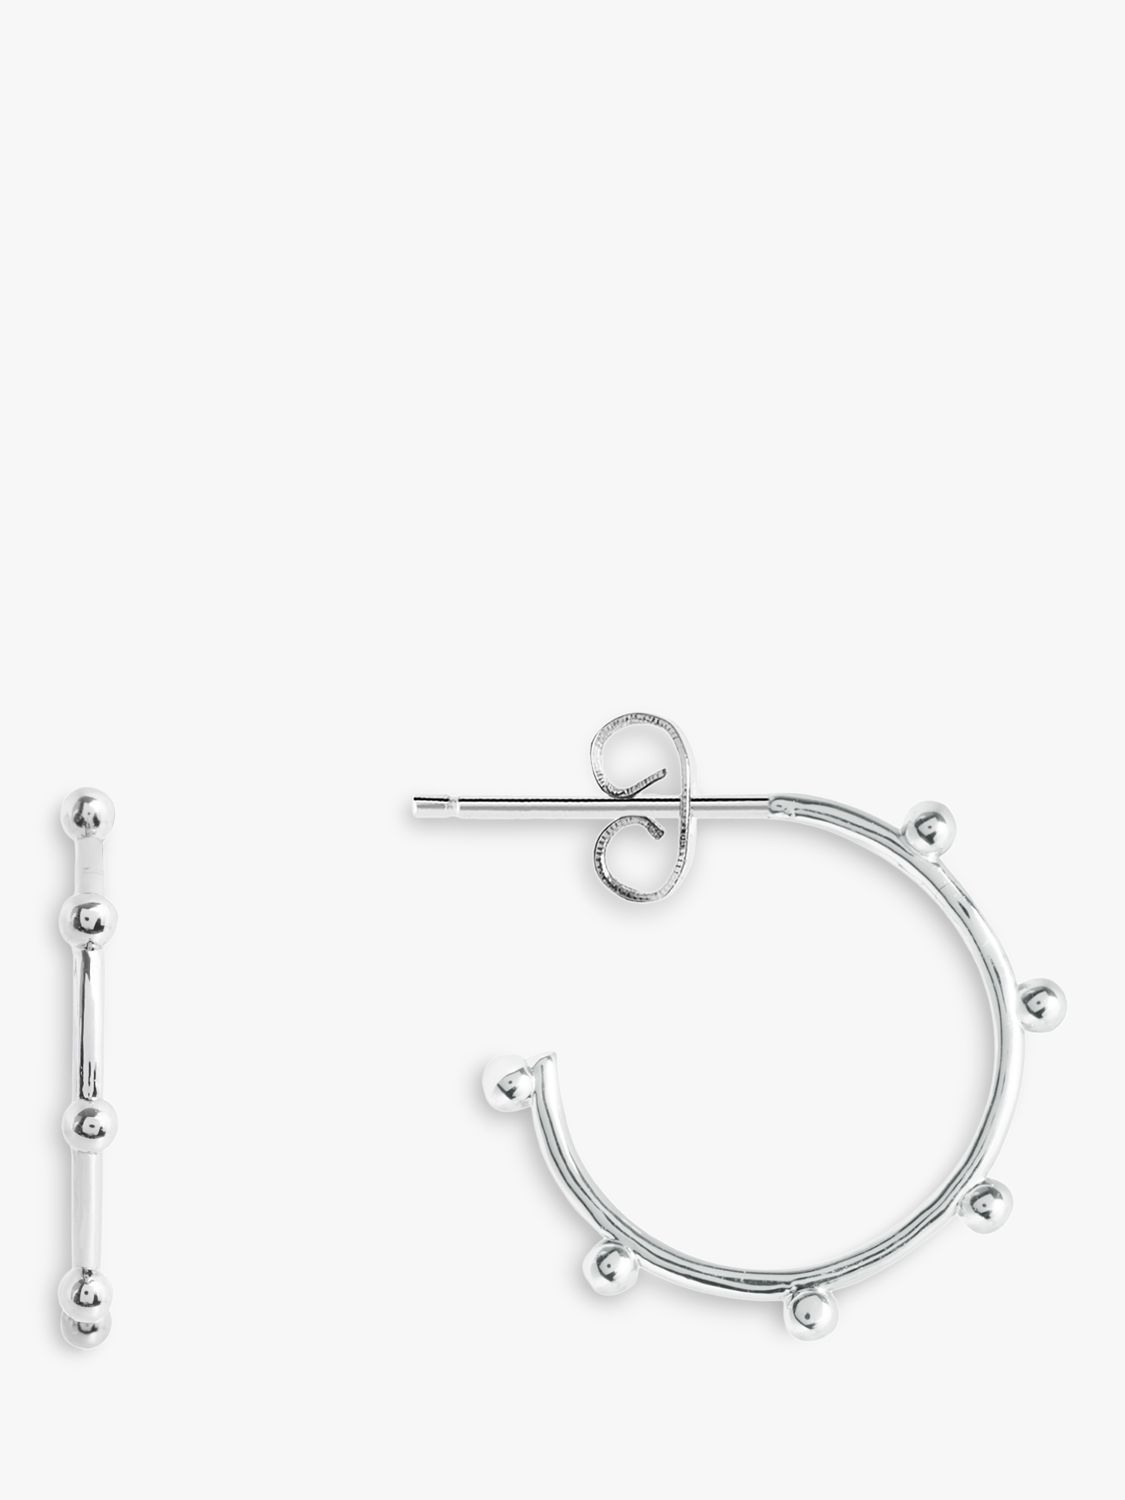 Joma Jewellery Beaded Hoop Earrings, Silver at John Lewis & Partners